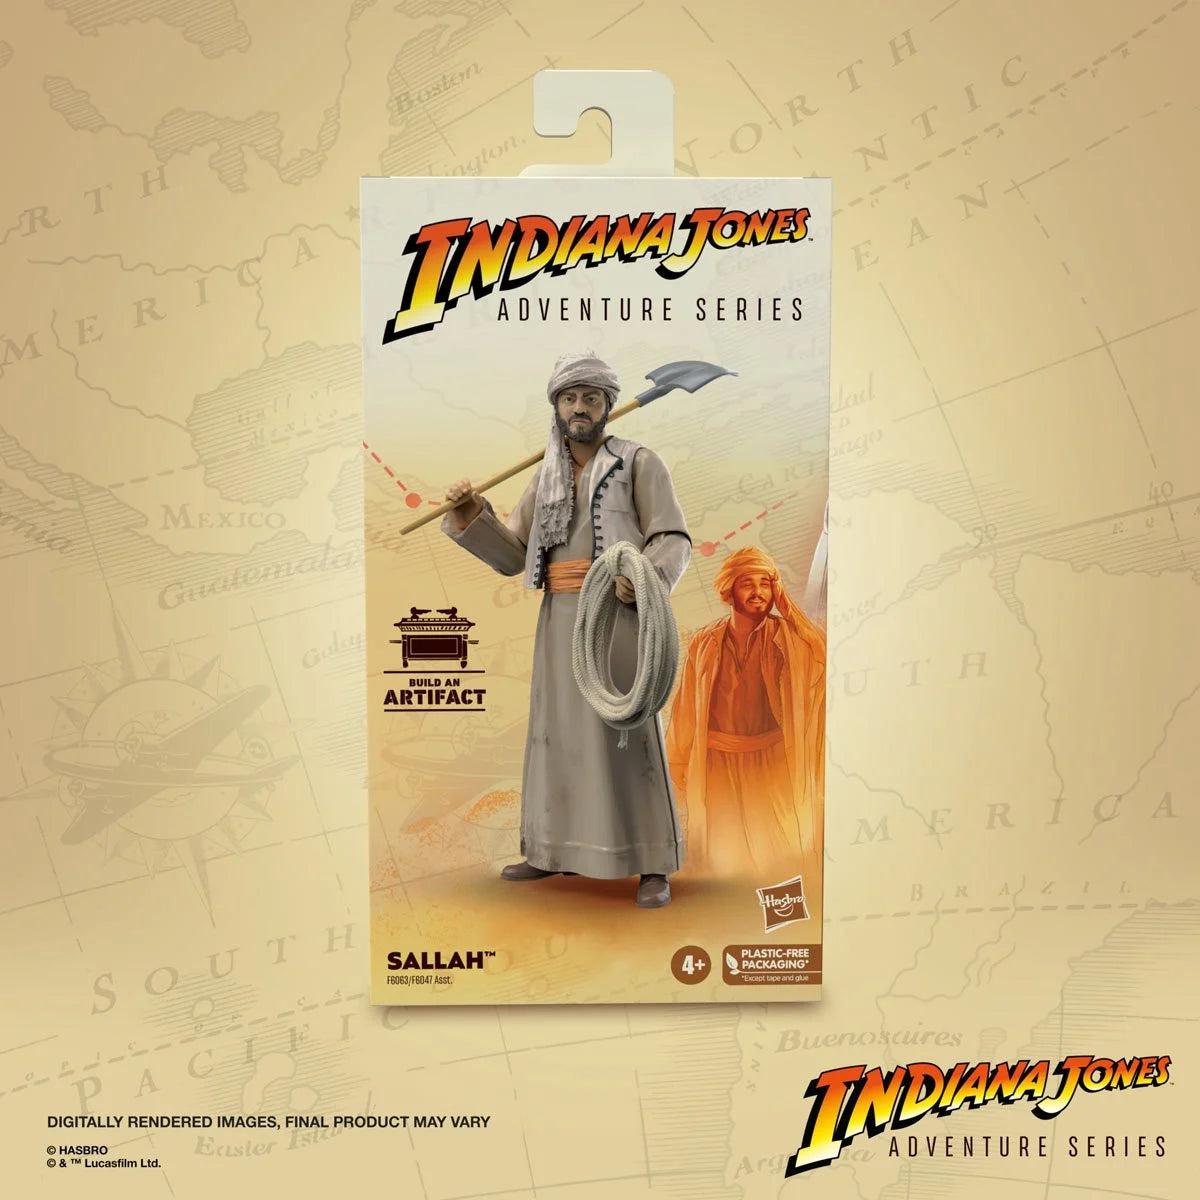 Indiana Jones Adventure Series Sallah 6-Inch Action Figure Toy